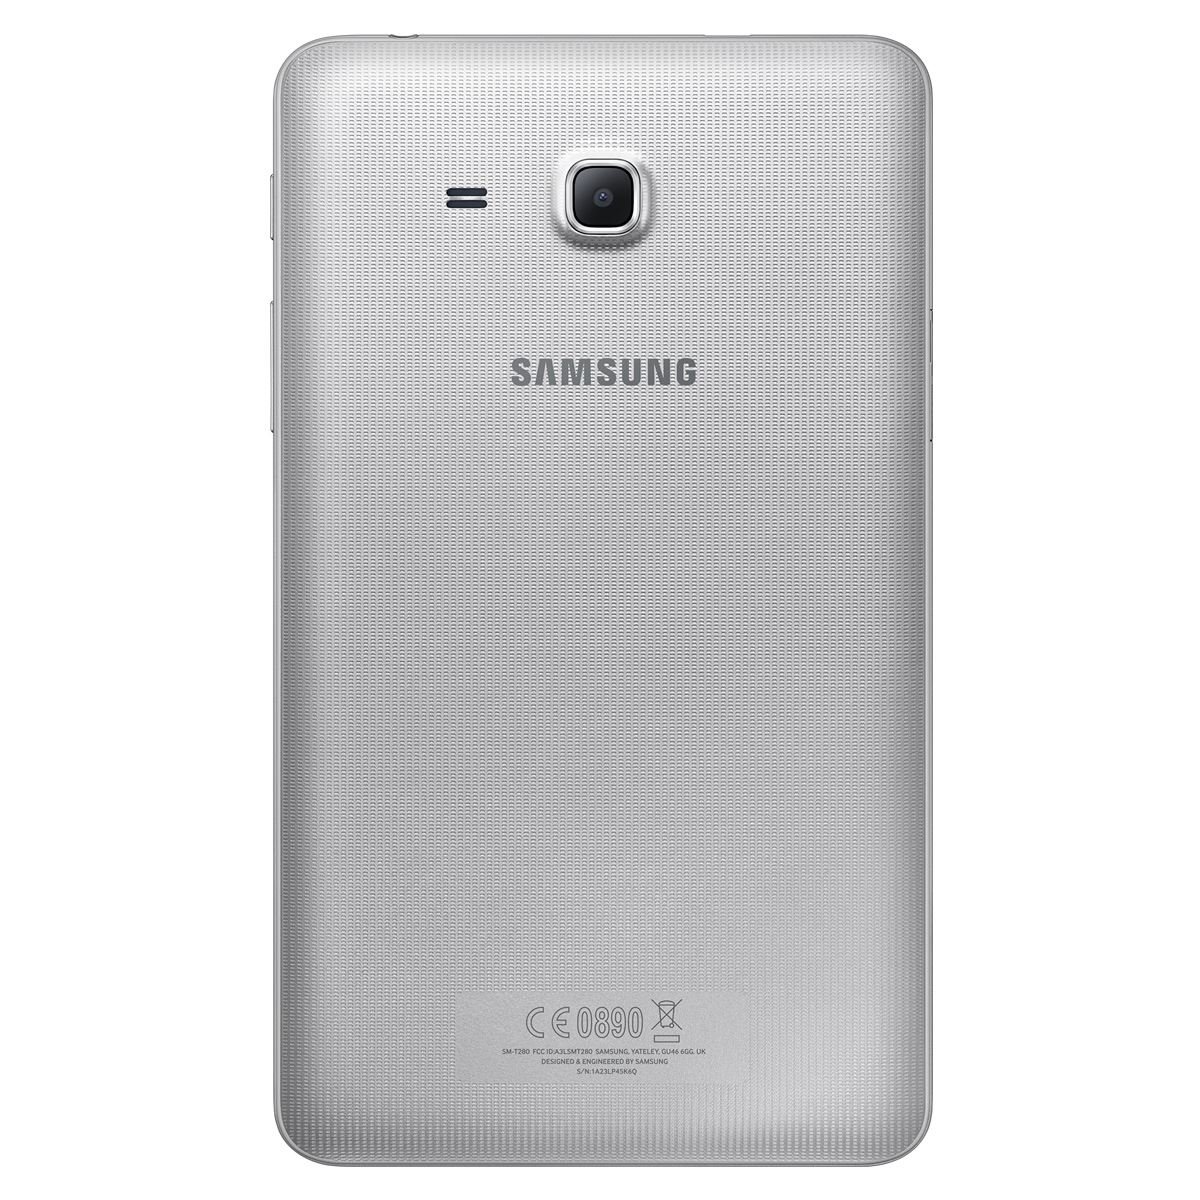 Samsung Galaxy Tab A 7 8GB Silver